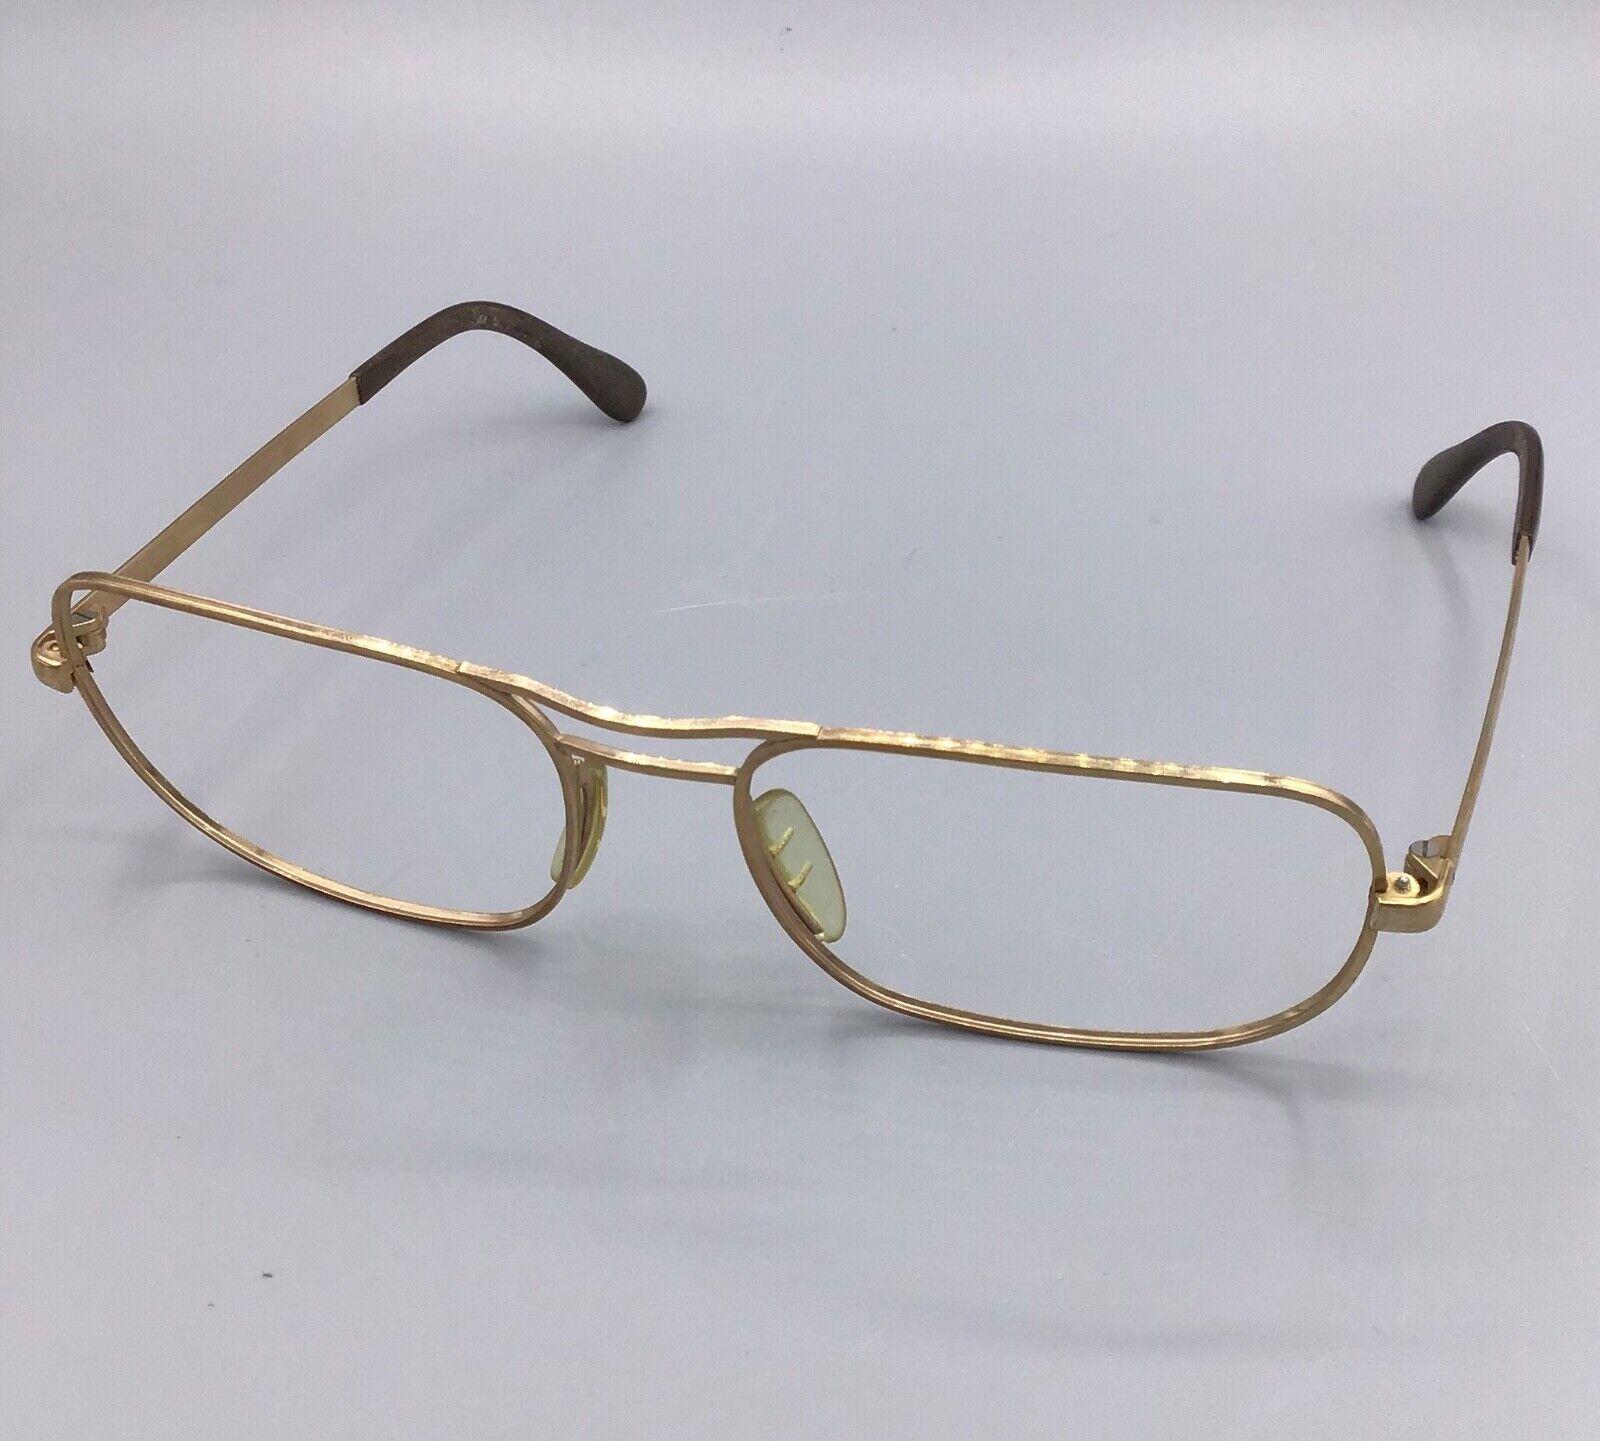 Marwitz occhiale vintage eyewear brillen lunettes 18 m/m gold laminated 60s